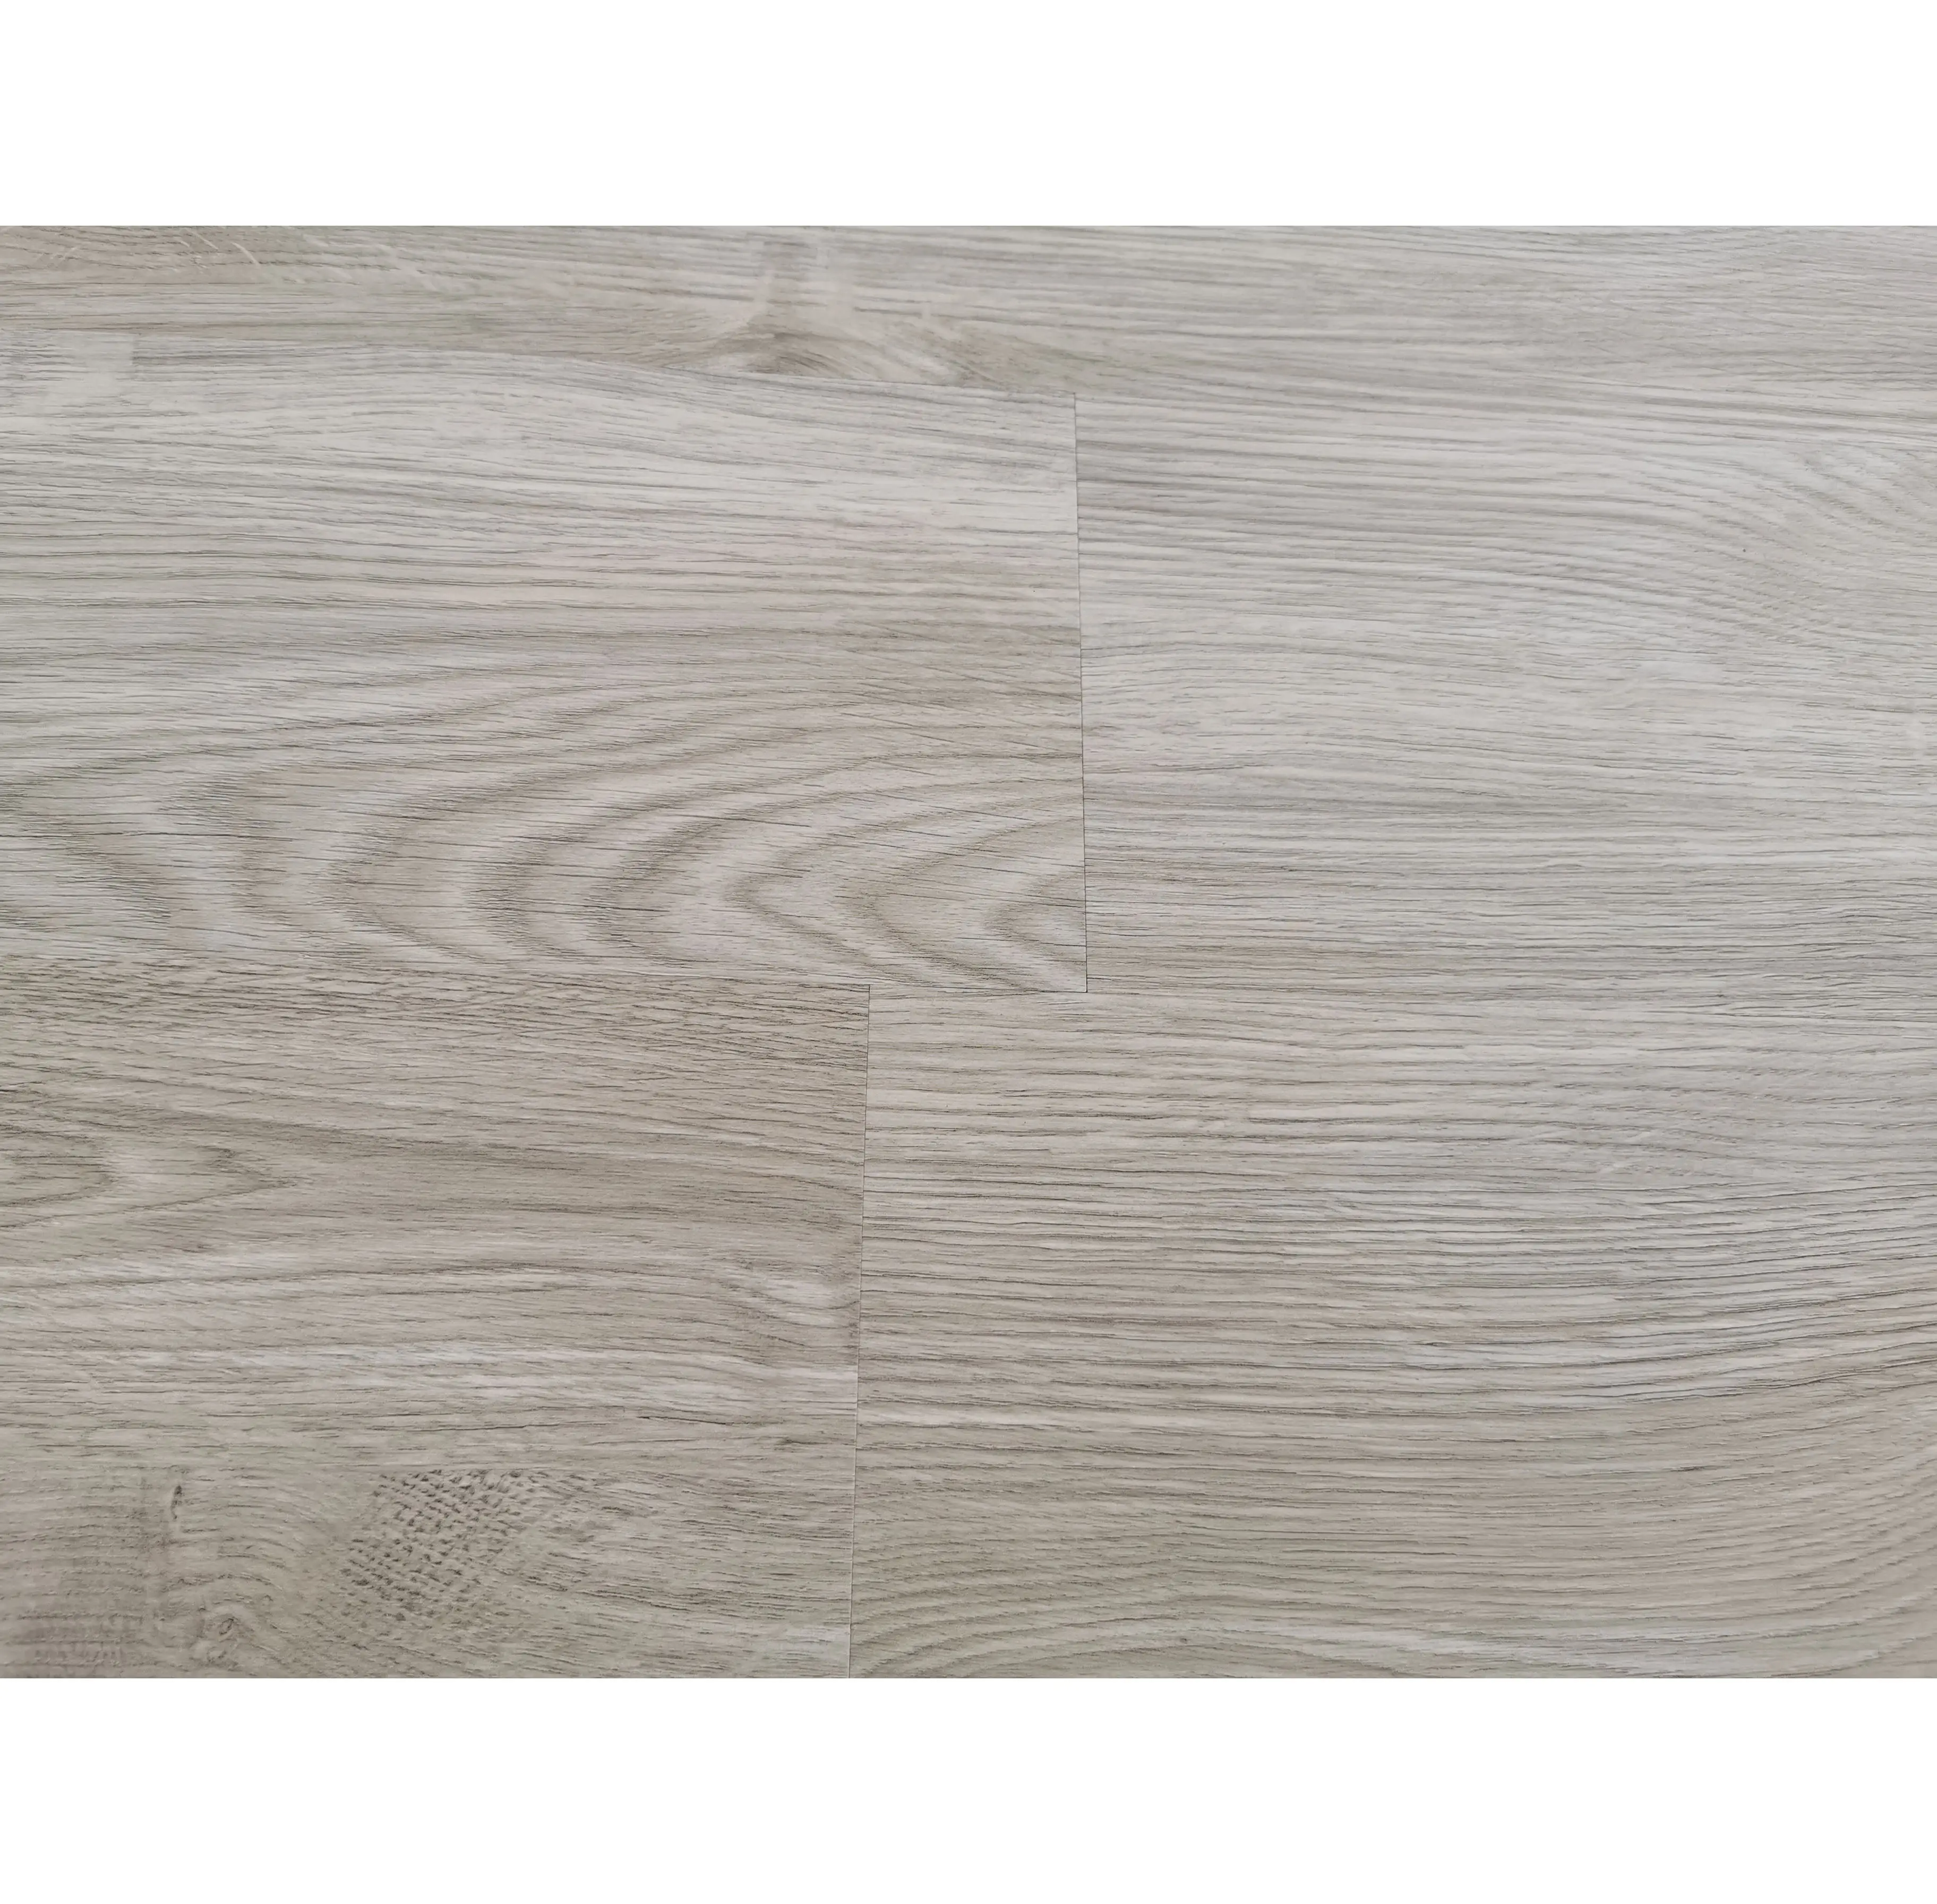 Luxury vinyl PVC wooden texture floor pvc flooring vinyl plank tile